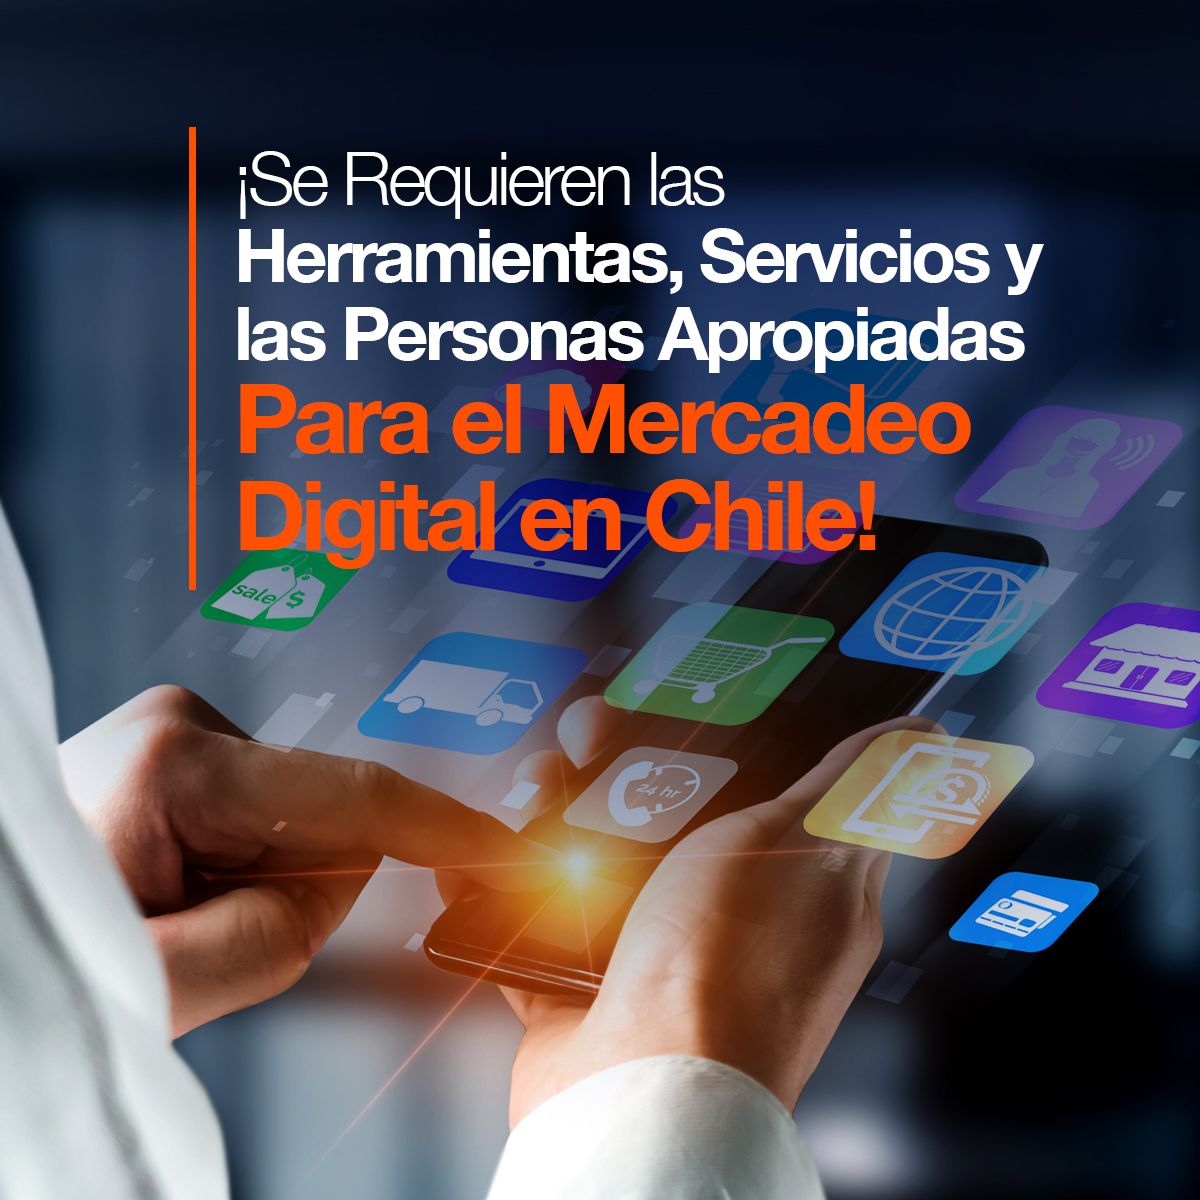 ¡Se Requieren las Herramientas, Servicios y las Personas Apropiadas Para el Mercadeo Digital en Chile!